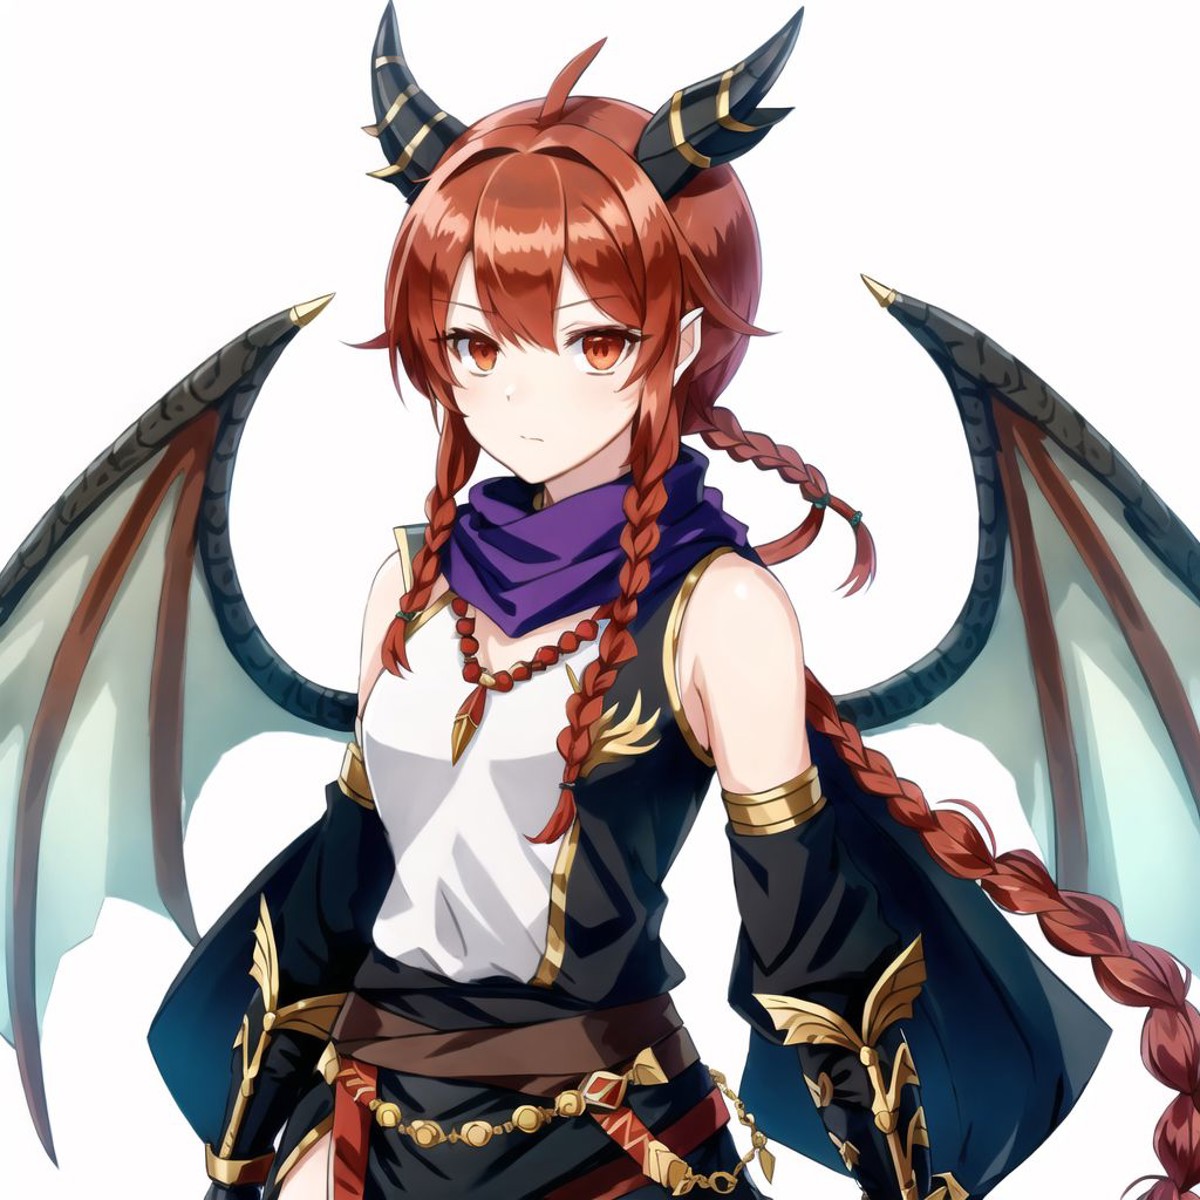 <lora:dragongirl-1_dragongirl-2__dragongirl-3_dragongirl-4--retro_ham_avas_jun_rifl--09-01:1.0>, 


(dragon girl:1.0), dra...